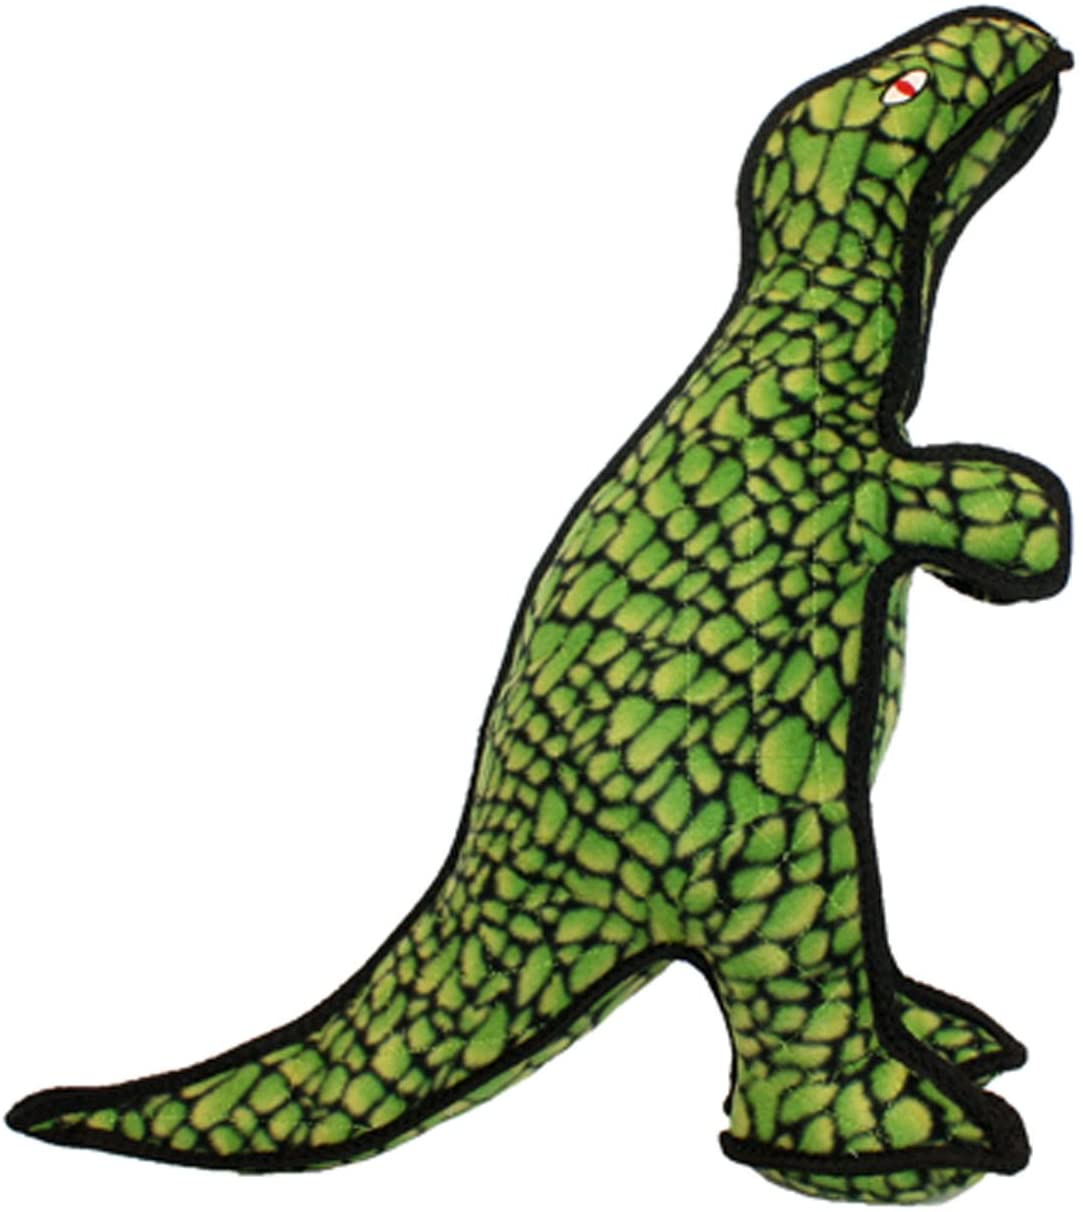 Tuffy's T-Rex